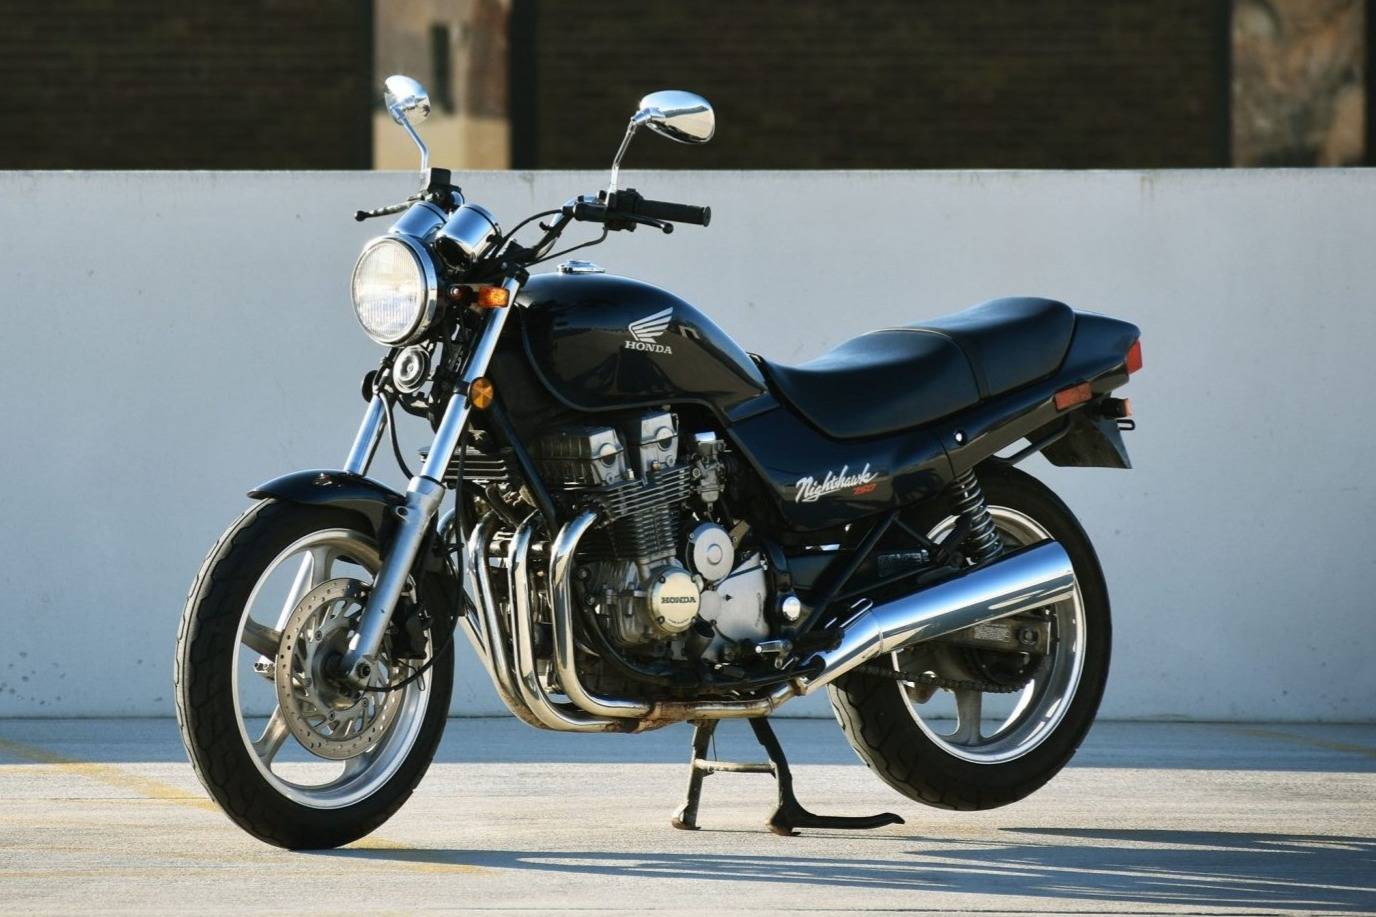 Информация по мотоциклу honda cb 750